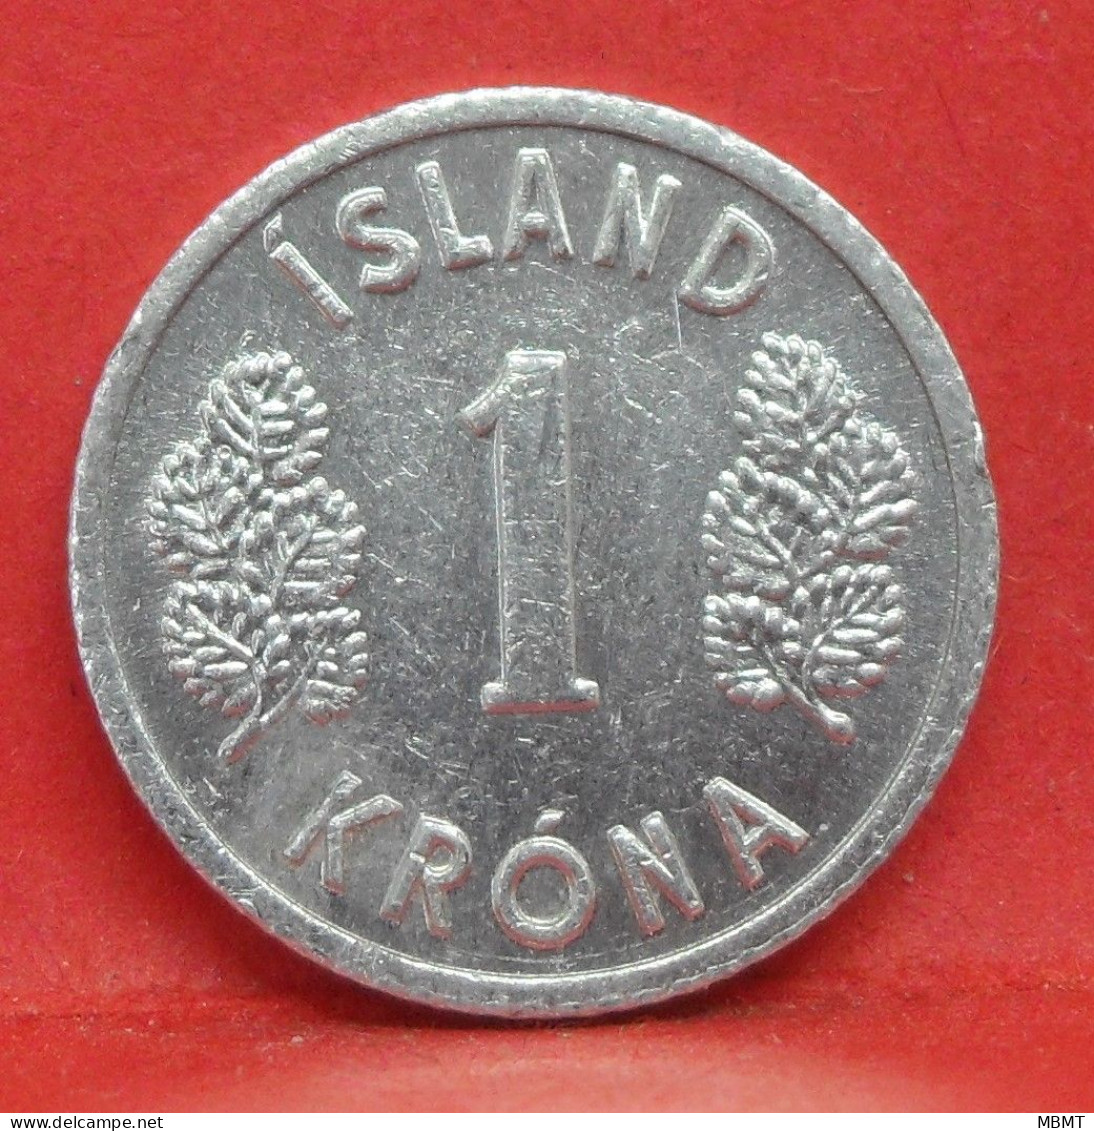 1 Krona 1978 - TTB - Pièce De Monnaie Islande - Article N°3295 - Island